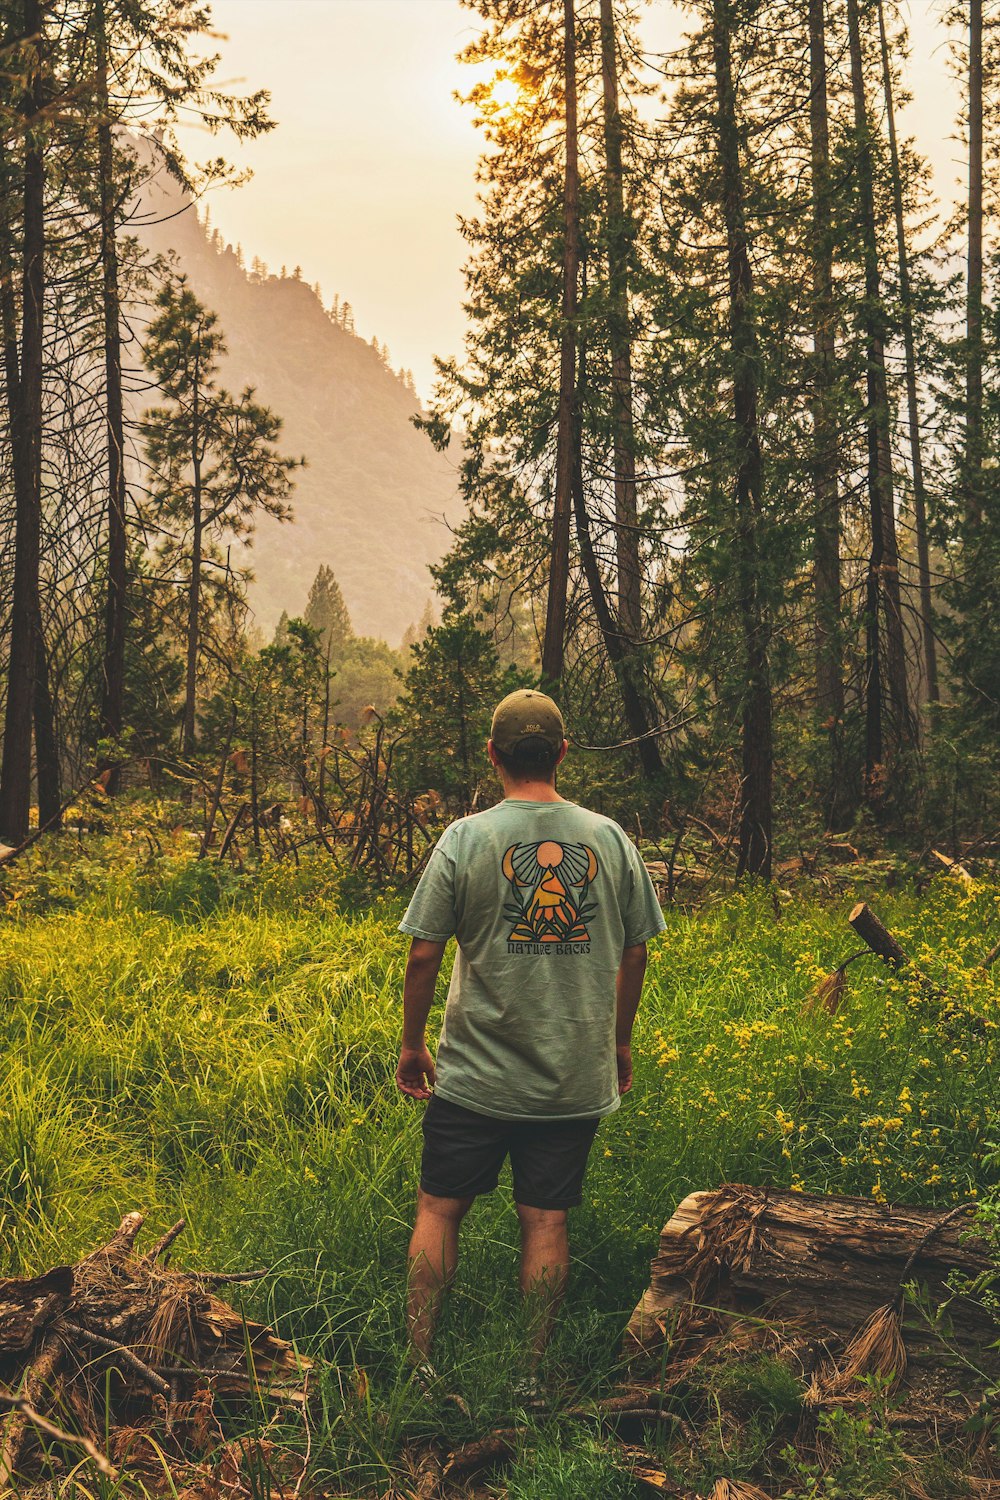 녹색 크루 넥 티셔츠를 입은 남자가 나무로 둘러싸인 푸른 잔디밭에 서 있다